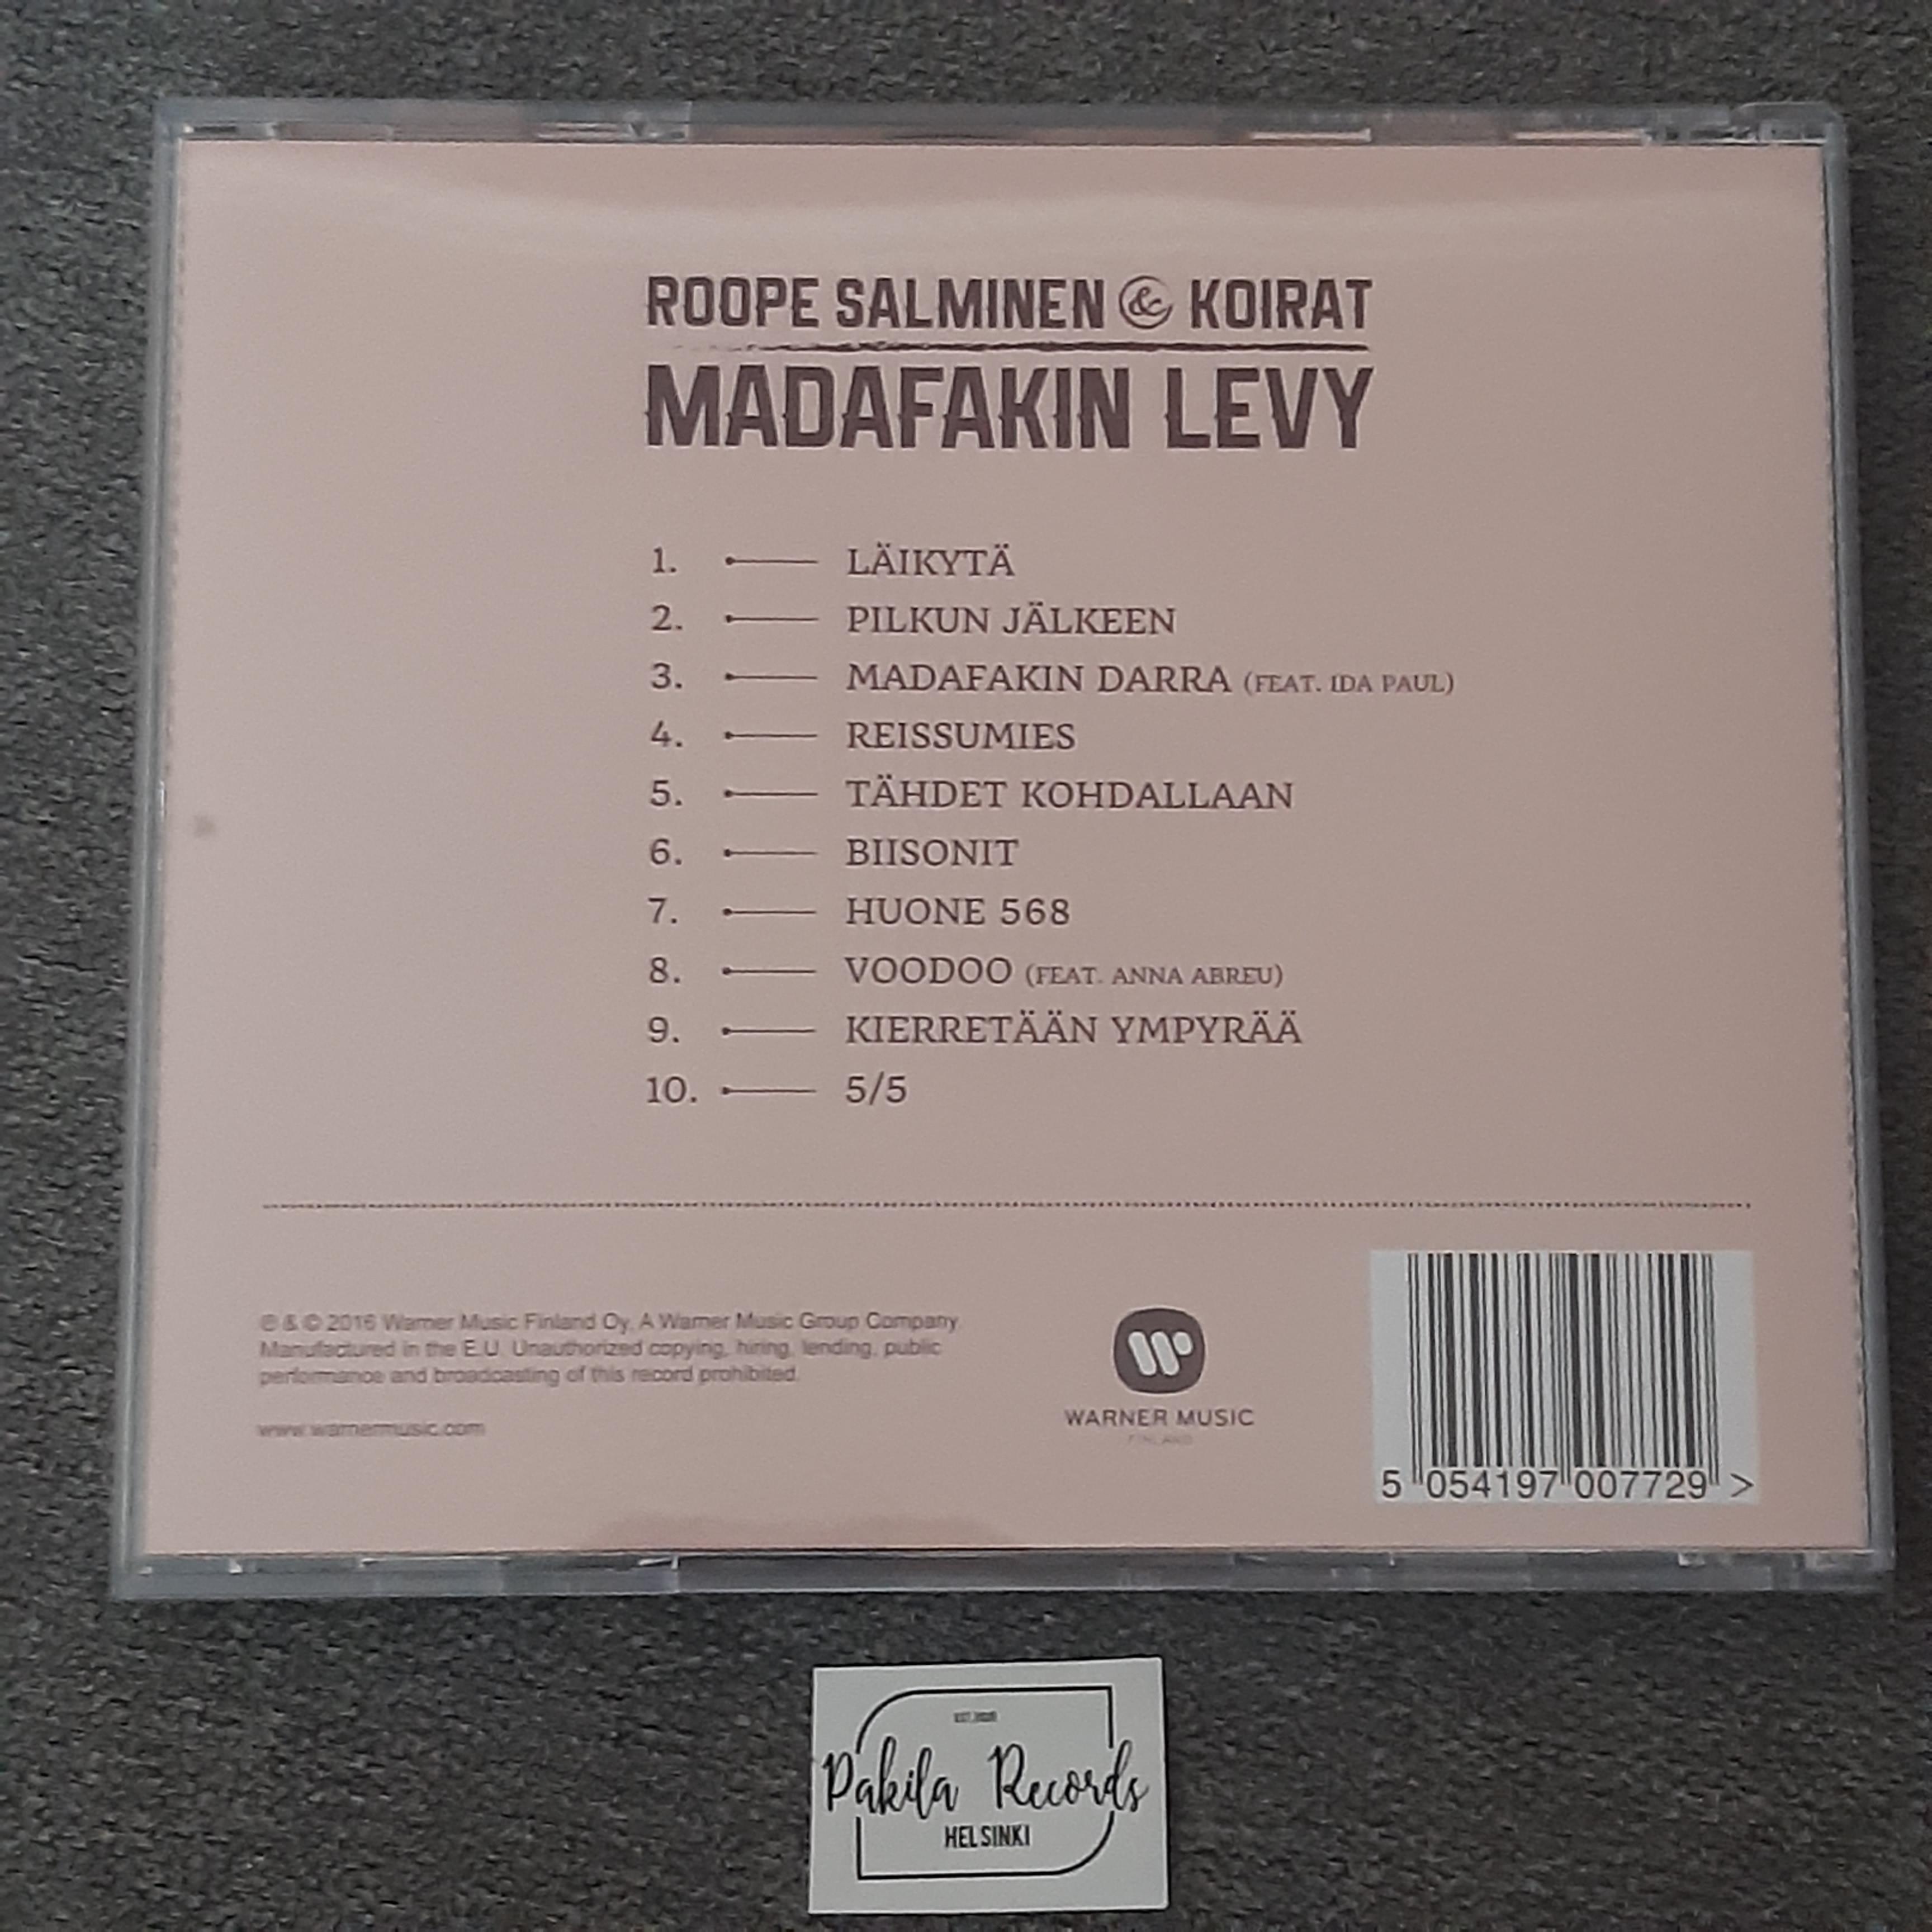 Roope Salminen & Koirat - Madafakin levy - CD (käytetty)